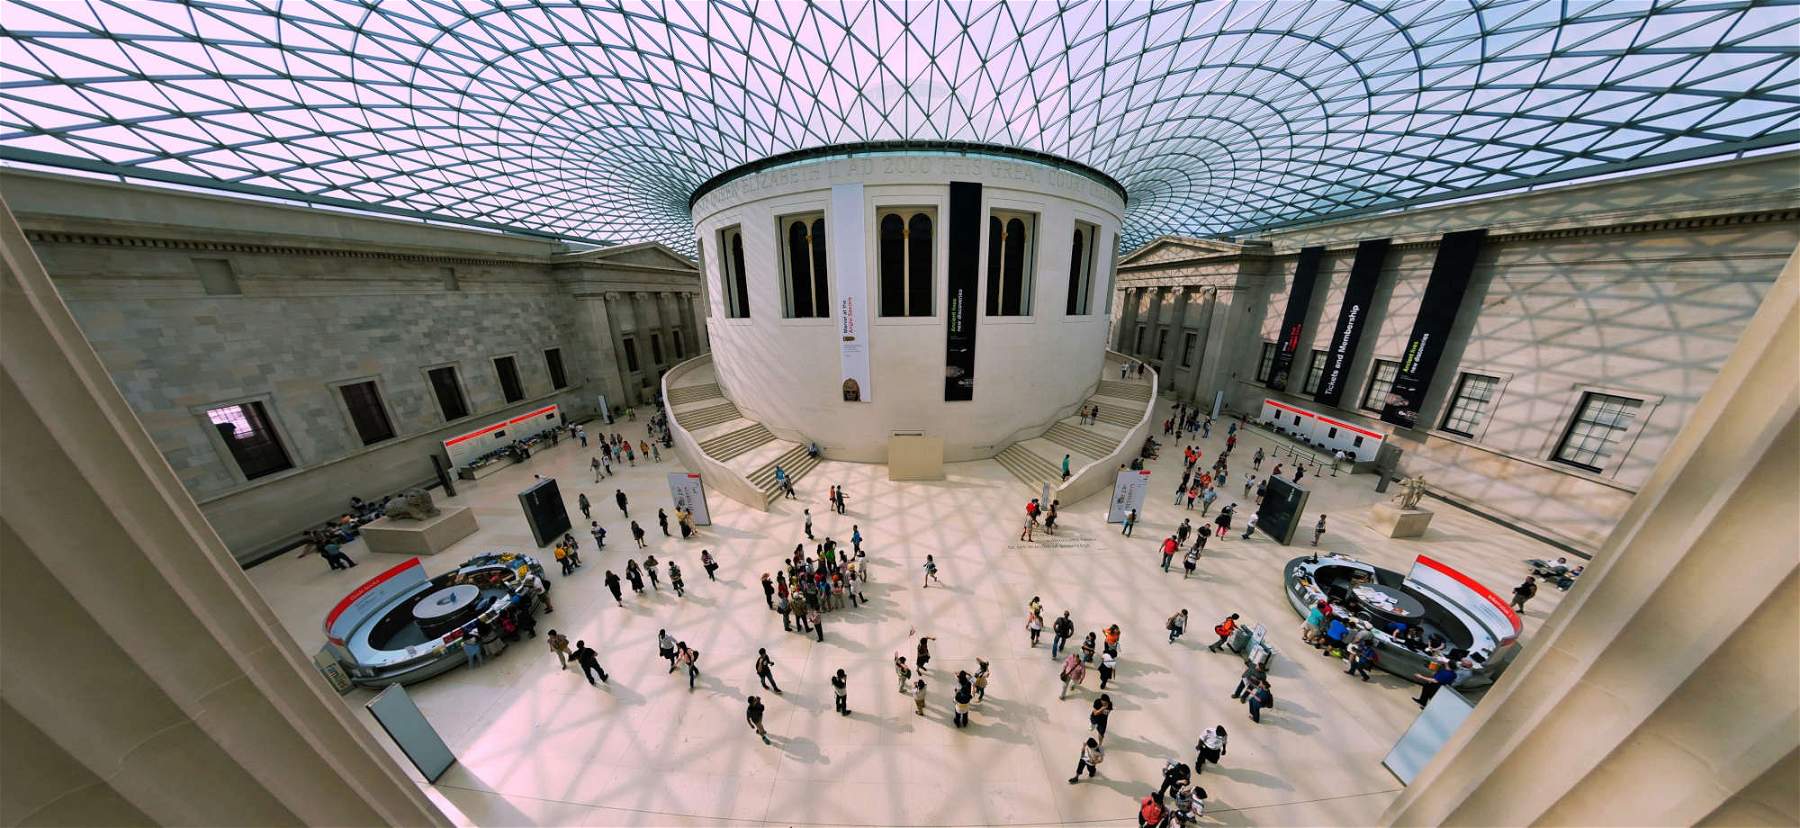 Non solo British: dai musei inglesi sparite centinaia di oggetti